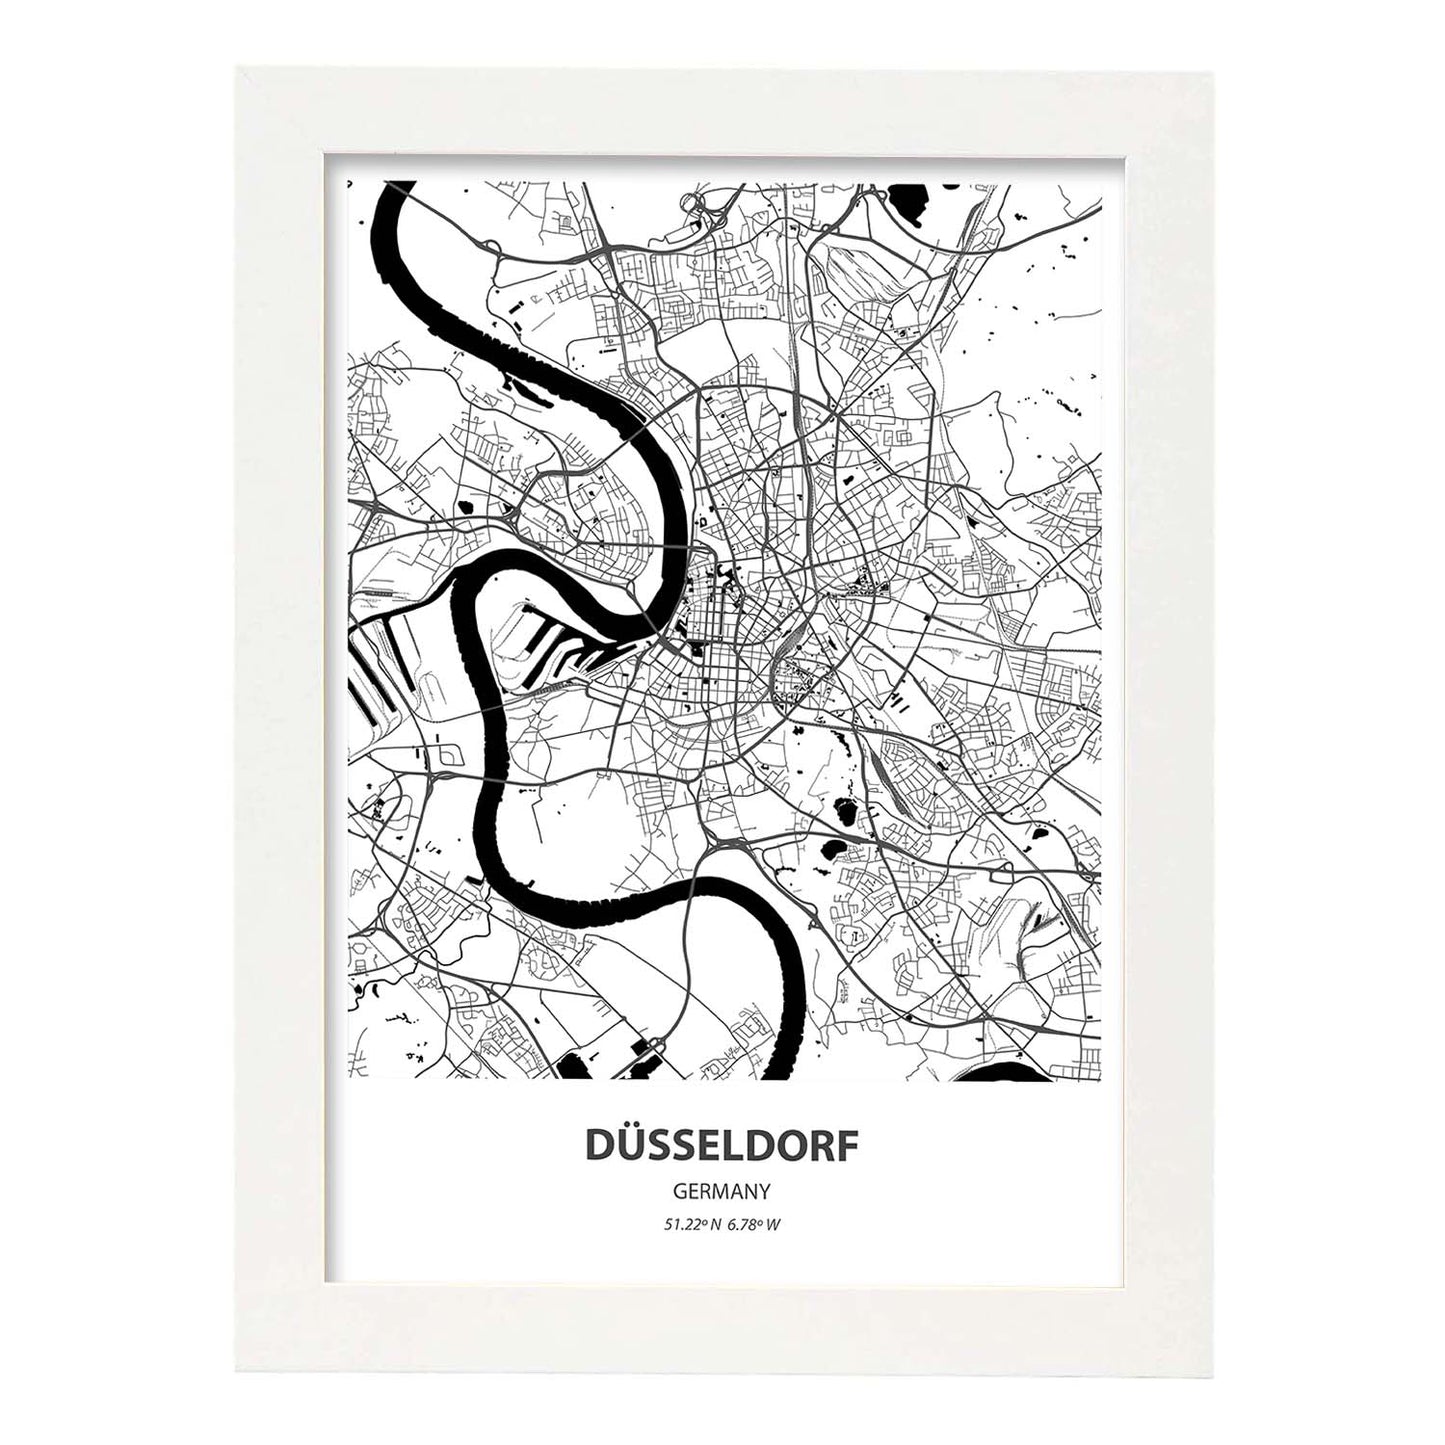 Poster con mapa de Dusseldorf - Alemania. Láminas de ciudades de Alemania con mares y ríos en color negro.-Artwork-Nacnic-A4-Marco Blanco-Nacnic Estudio SL